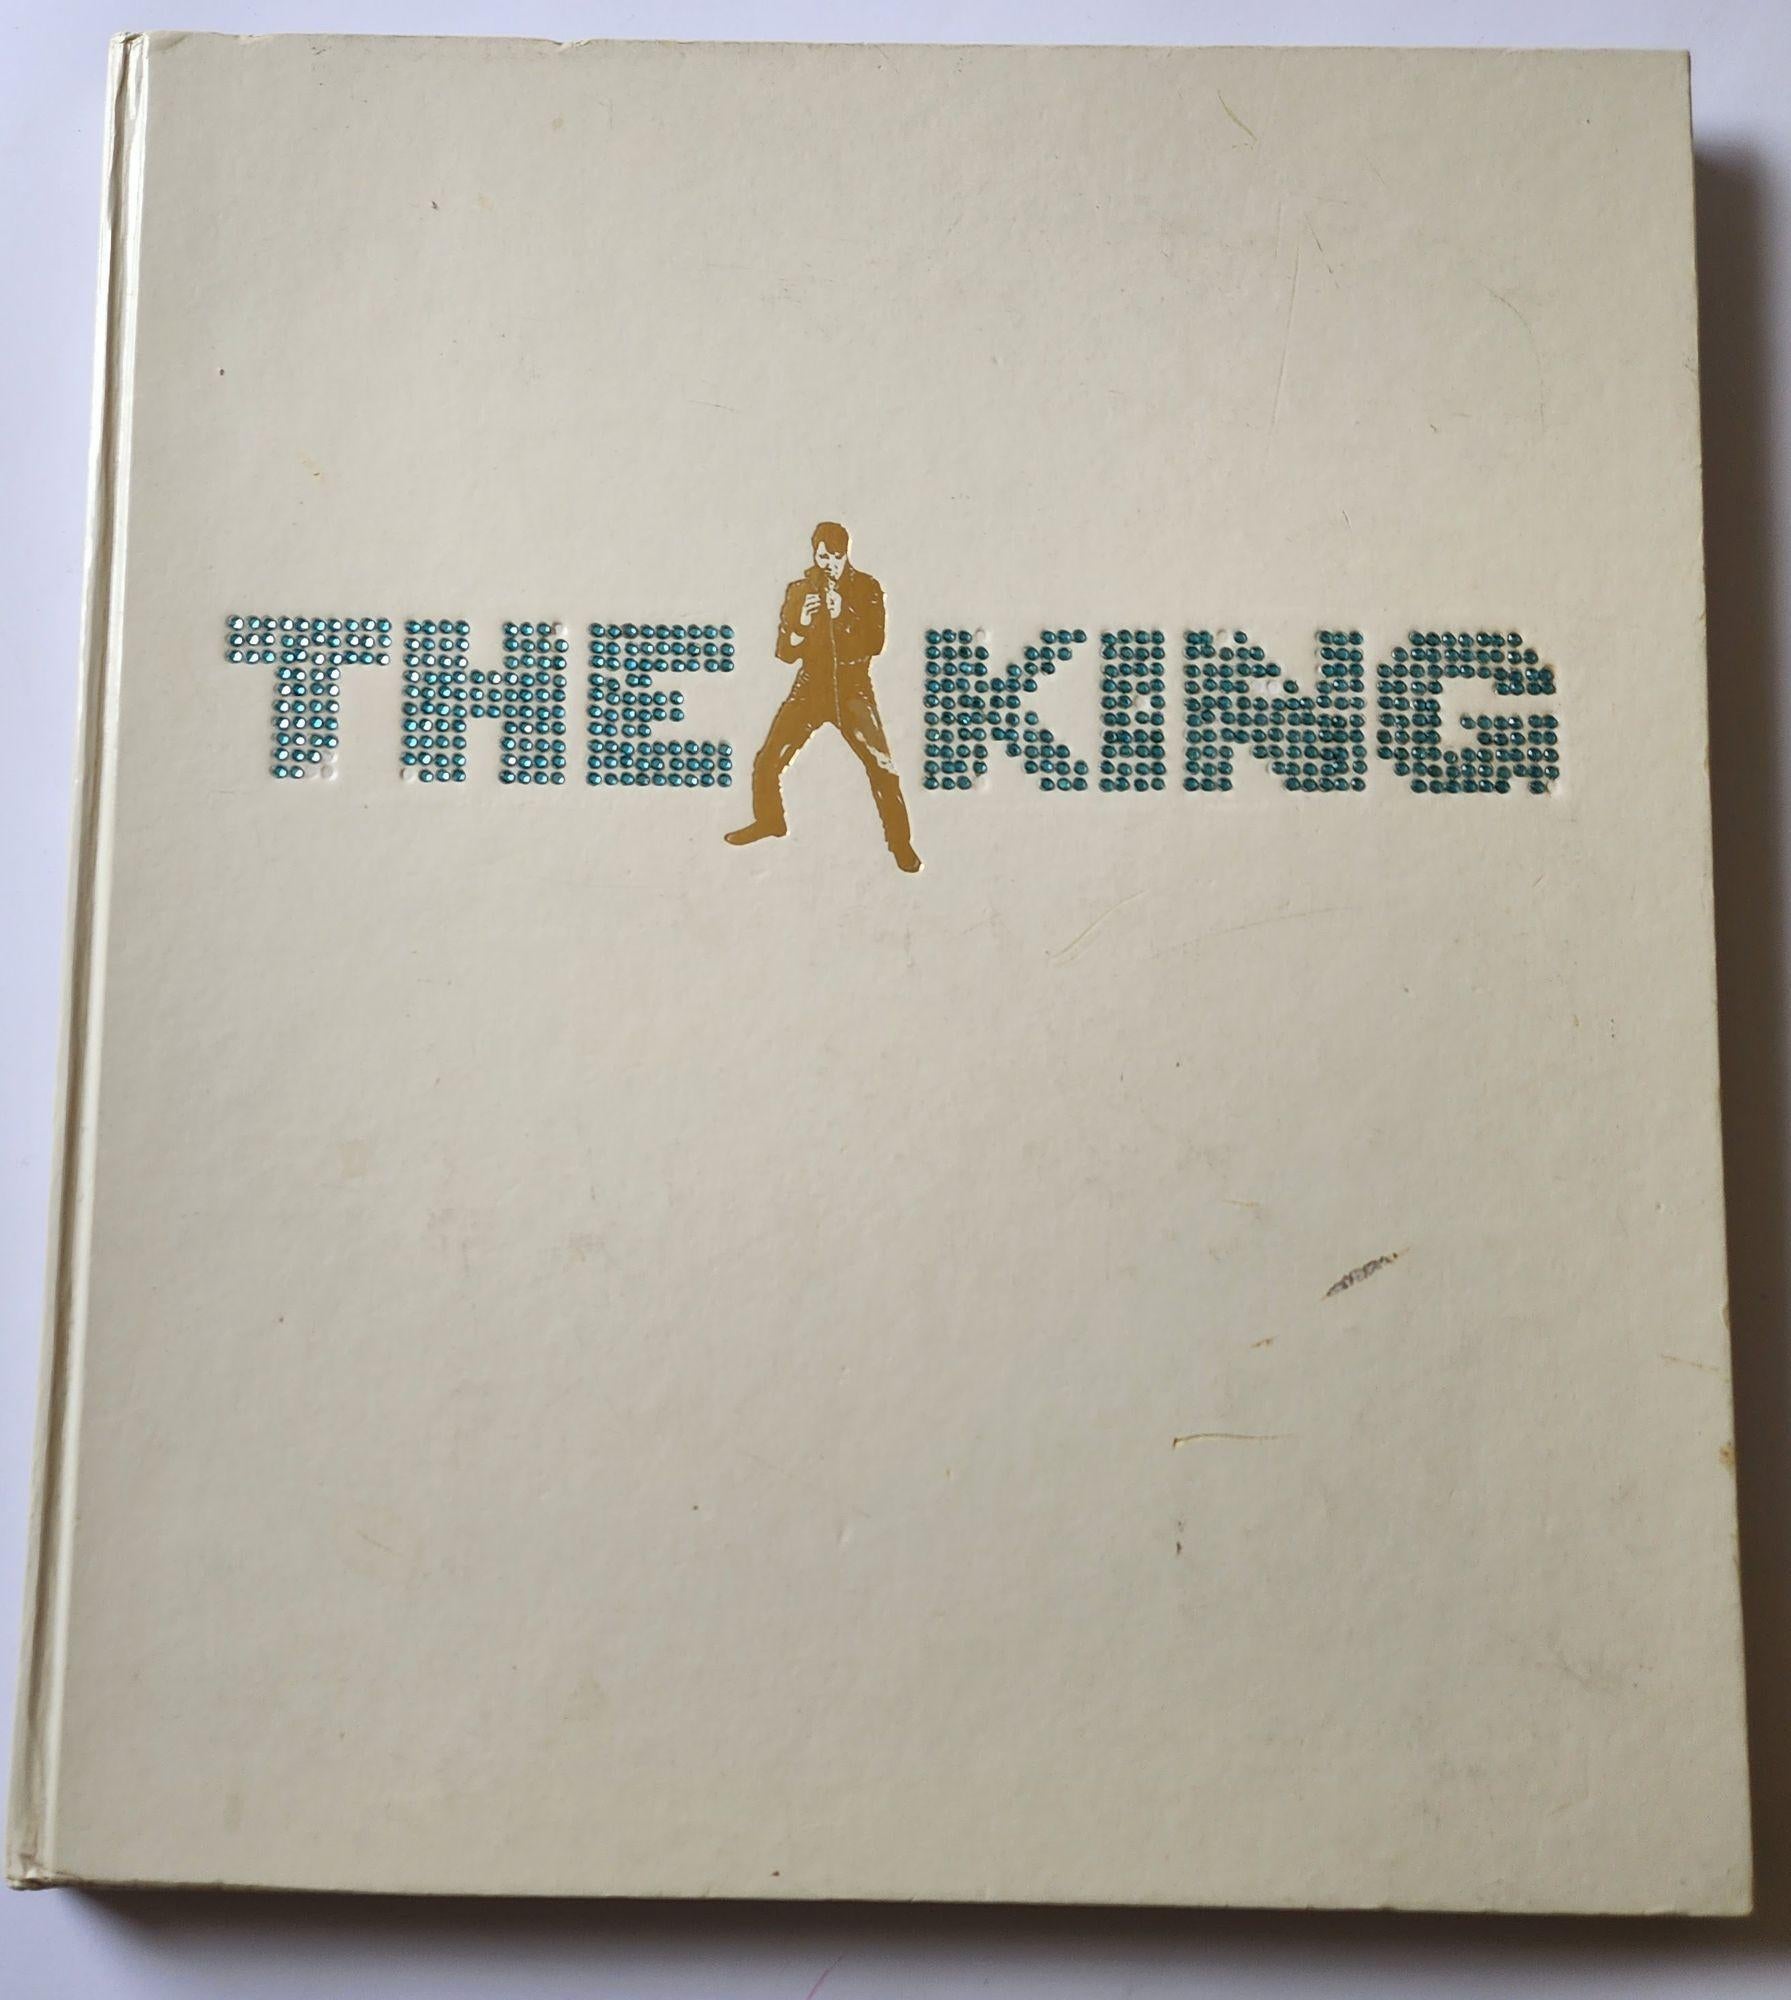 The King von Jim Piazza Elvis Presley – Großformatiges Couchtischbuch „The King“